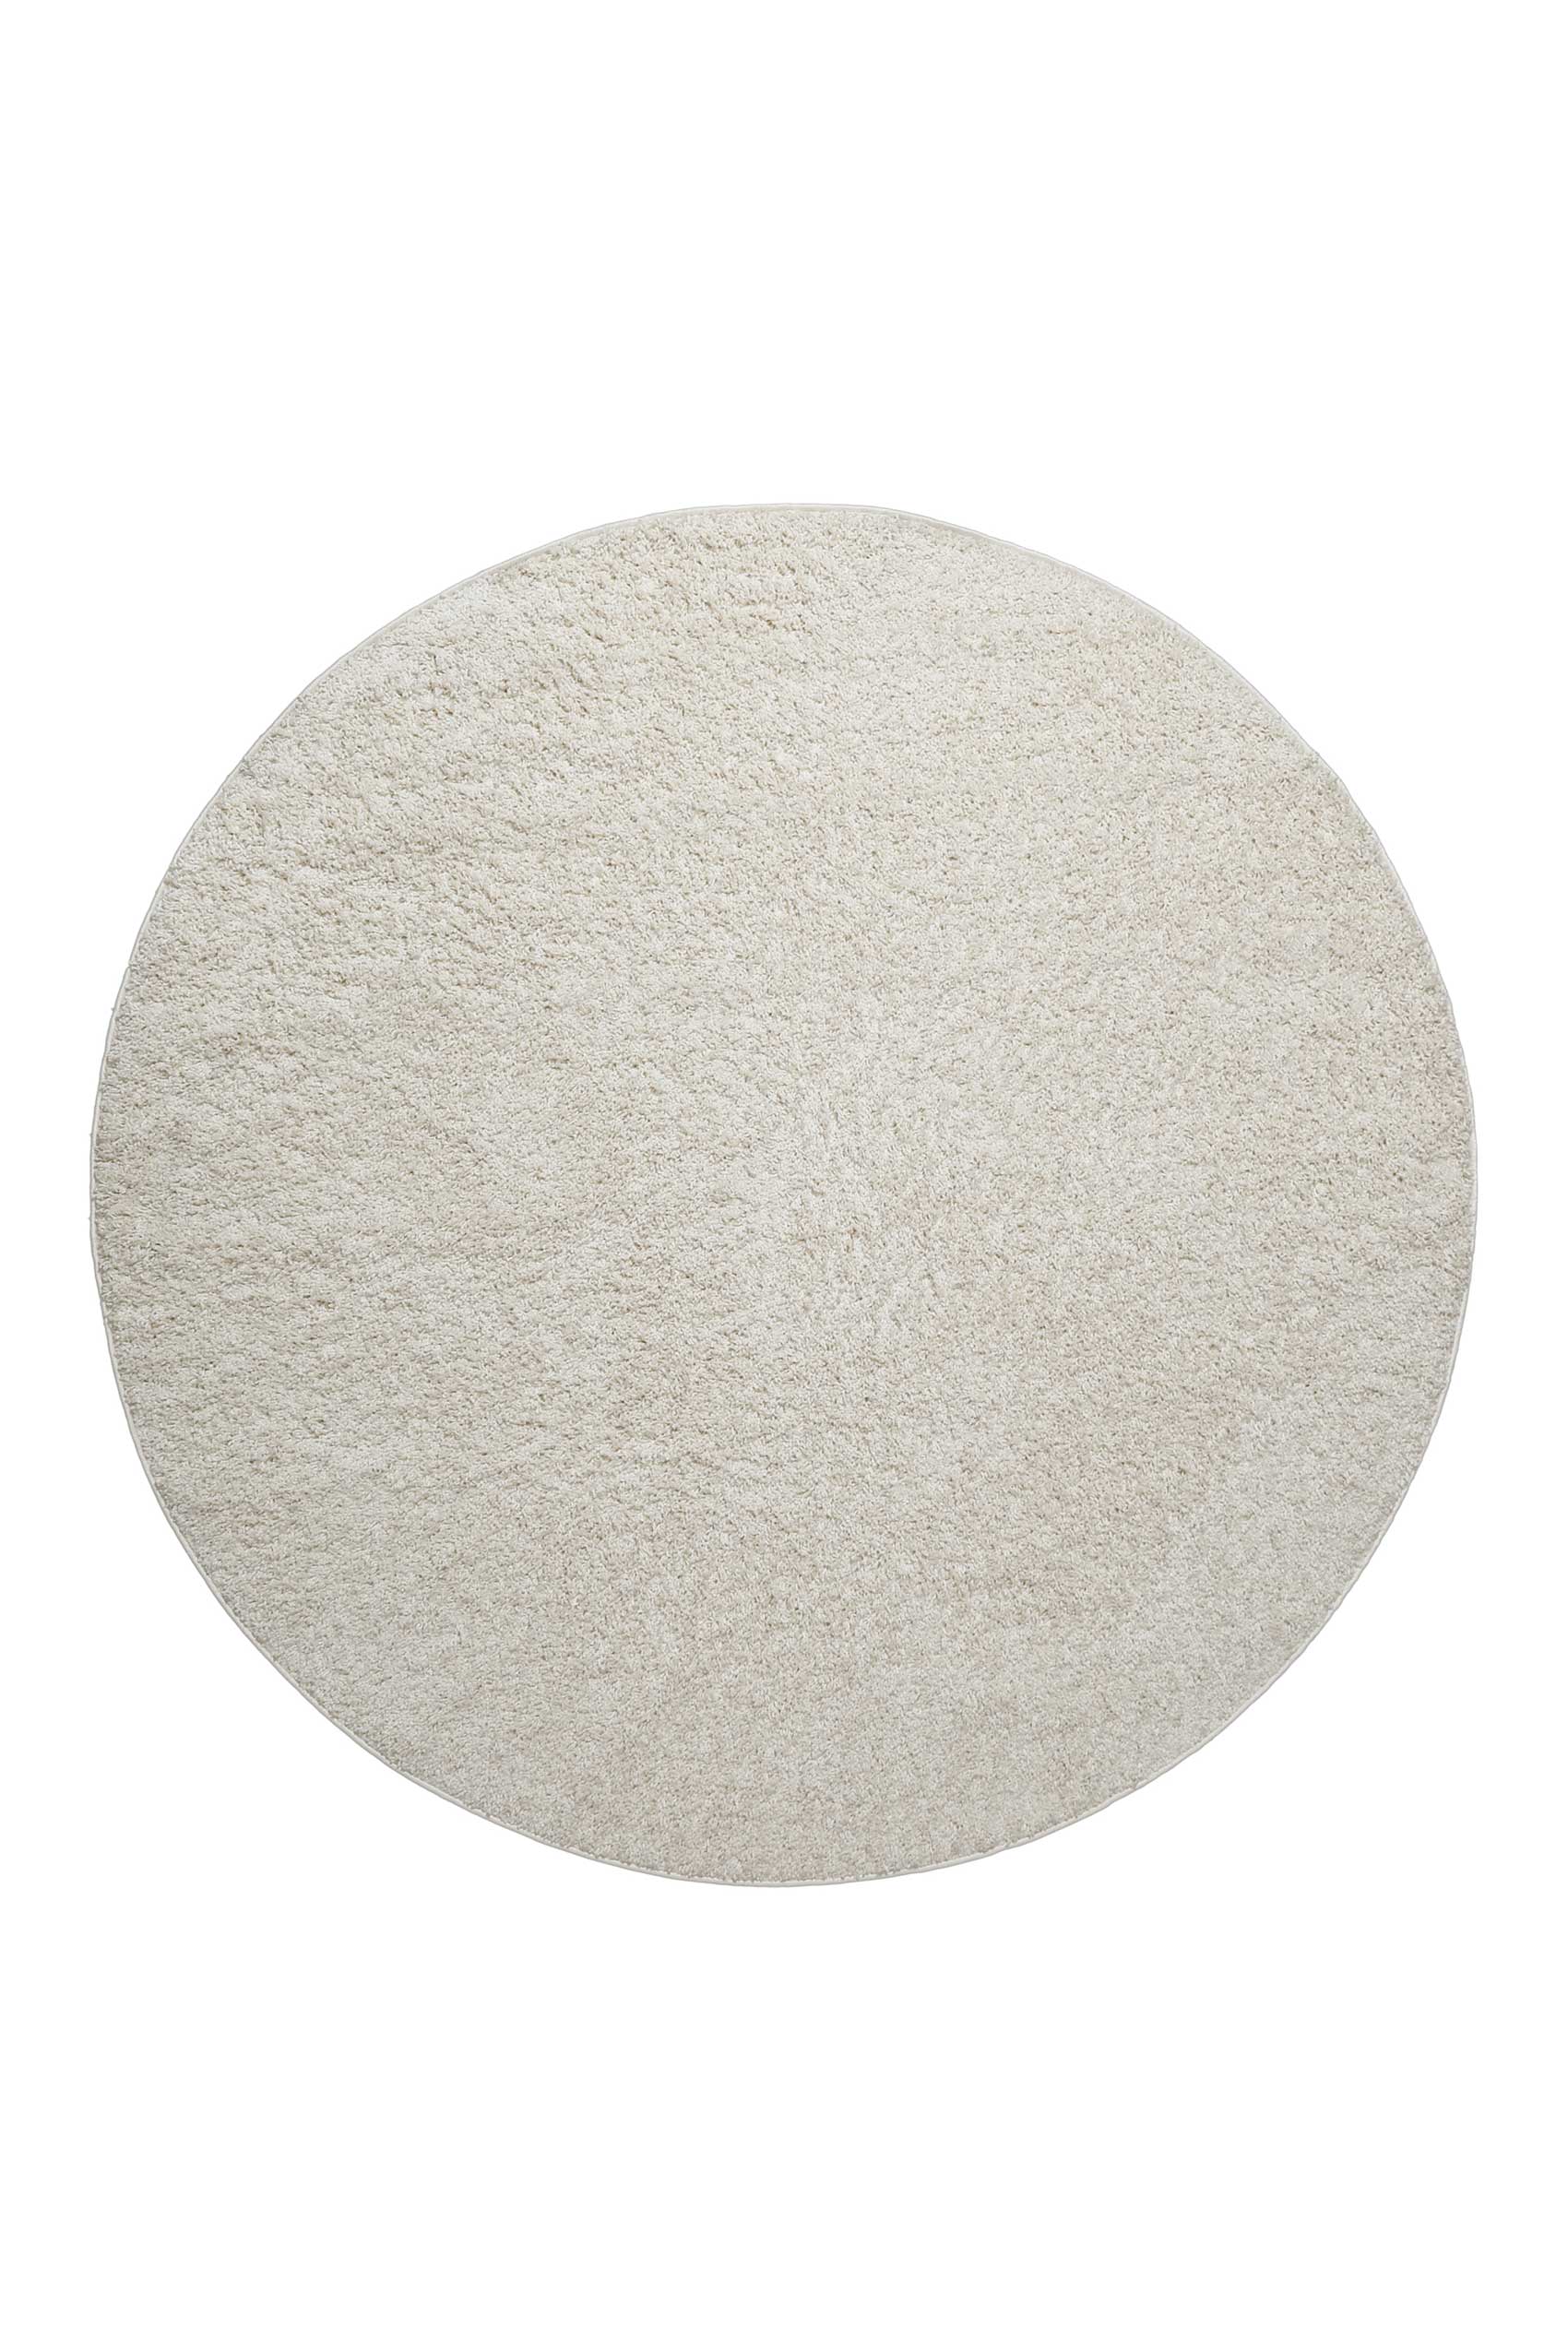 Teppich Rund Creme Weiß Hochflor » Greta « WECONhome Basics - Ansicht 1